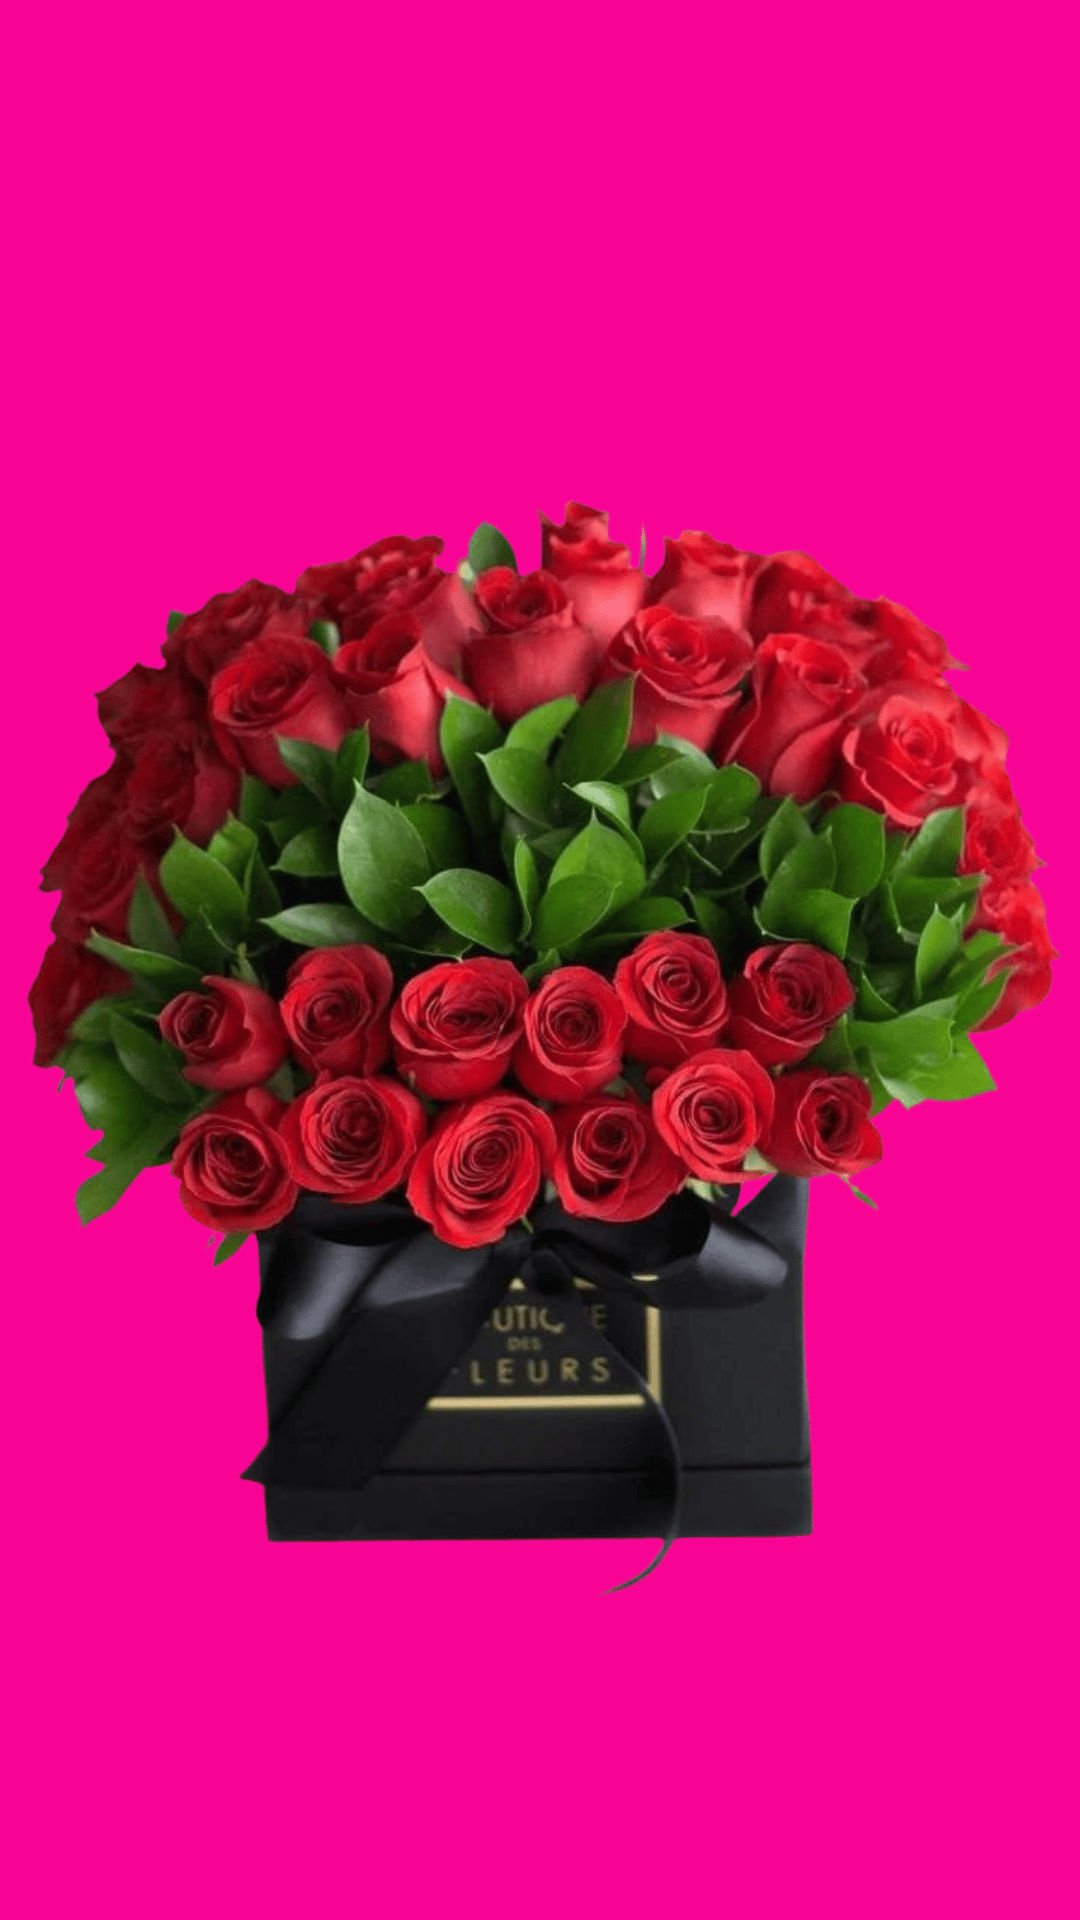 Papel LV, 60 pink rosas 🌹 #ramos #arreglofloral #bouquet #flores